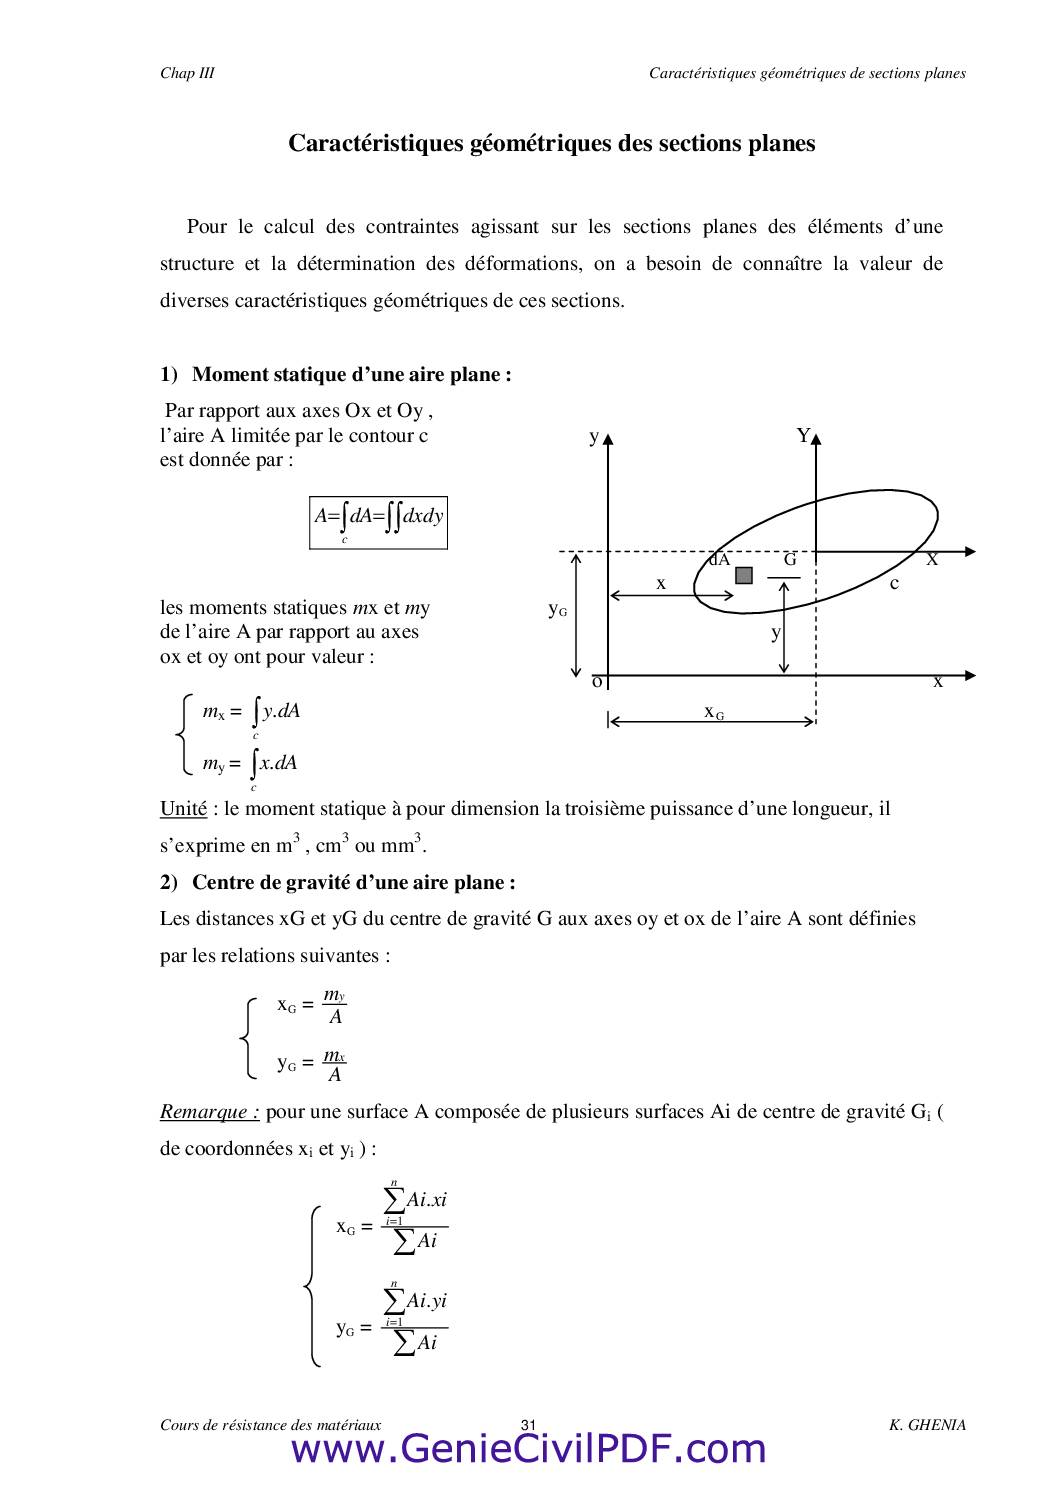 Cours RDM Caracteristiques geometriques des sections planes